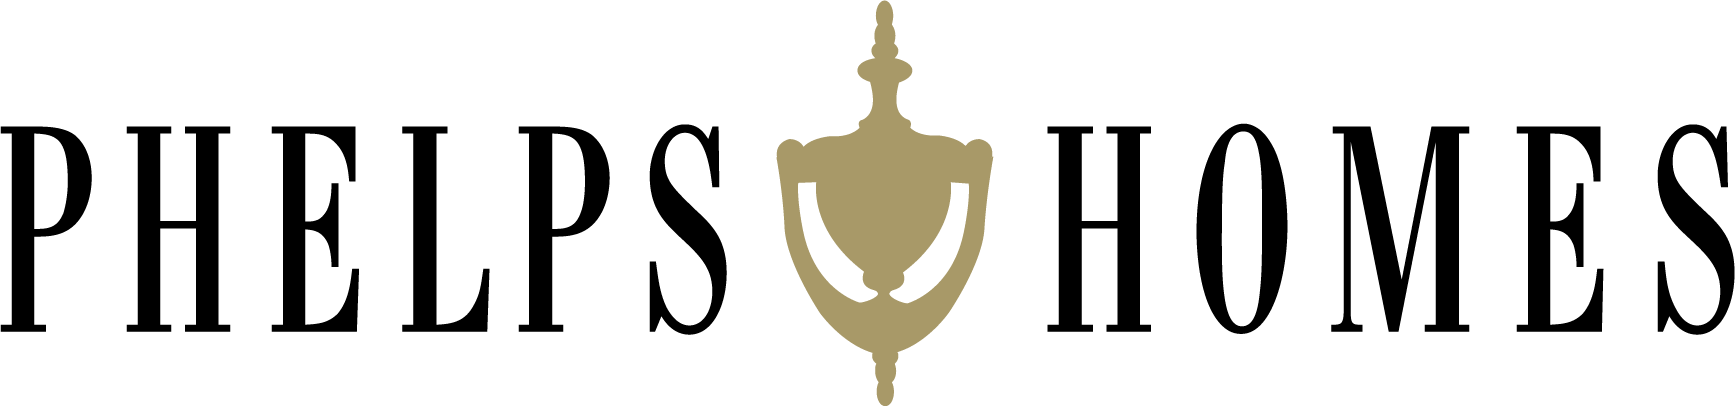 Phelps_Logo